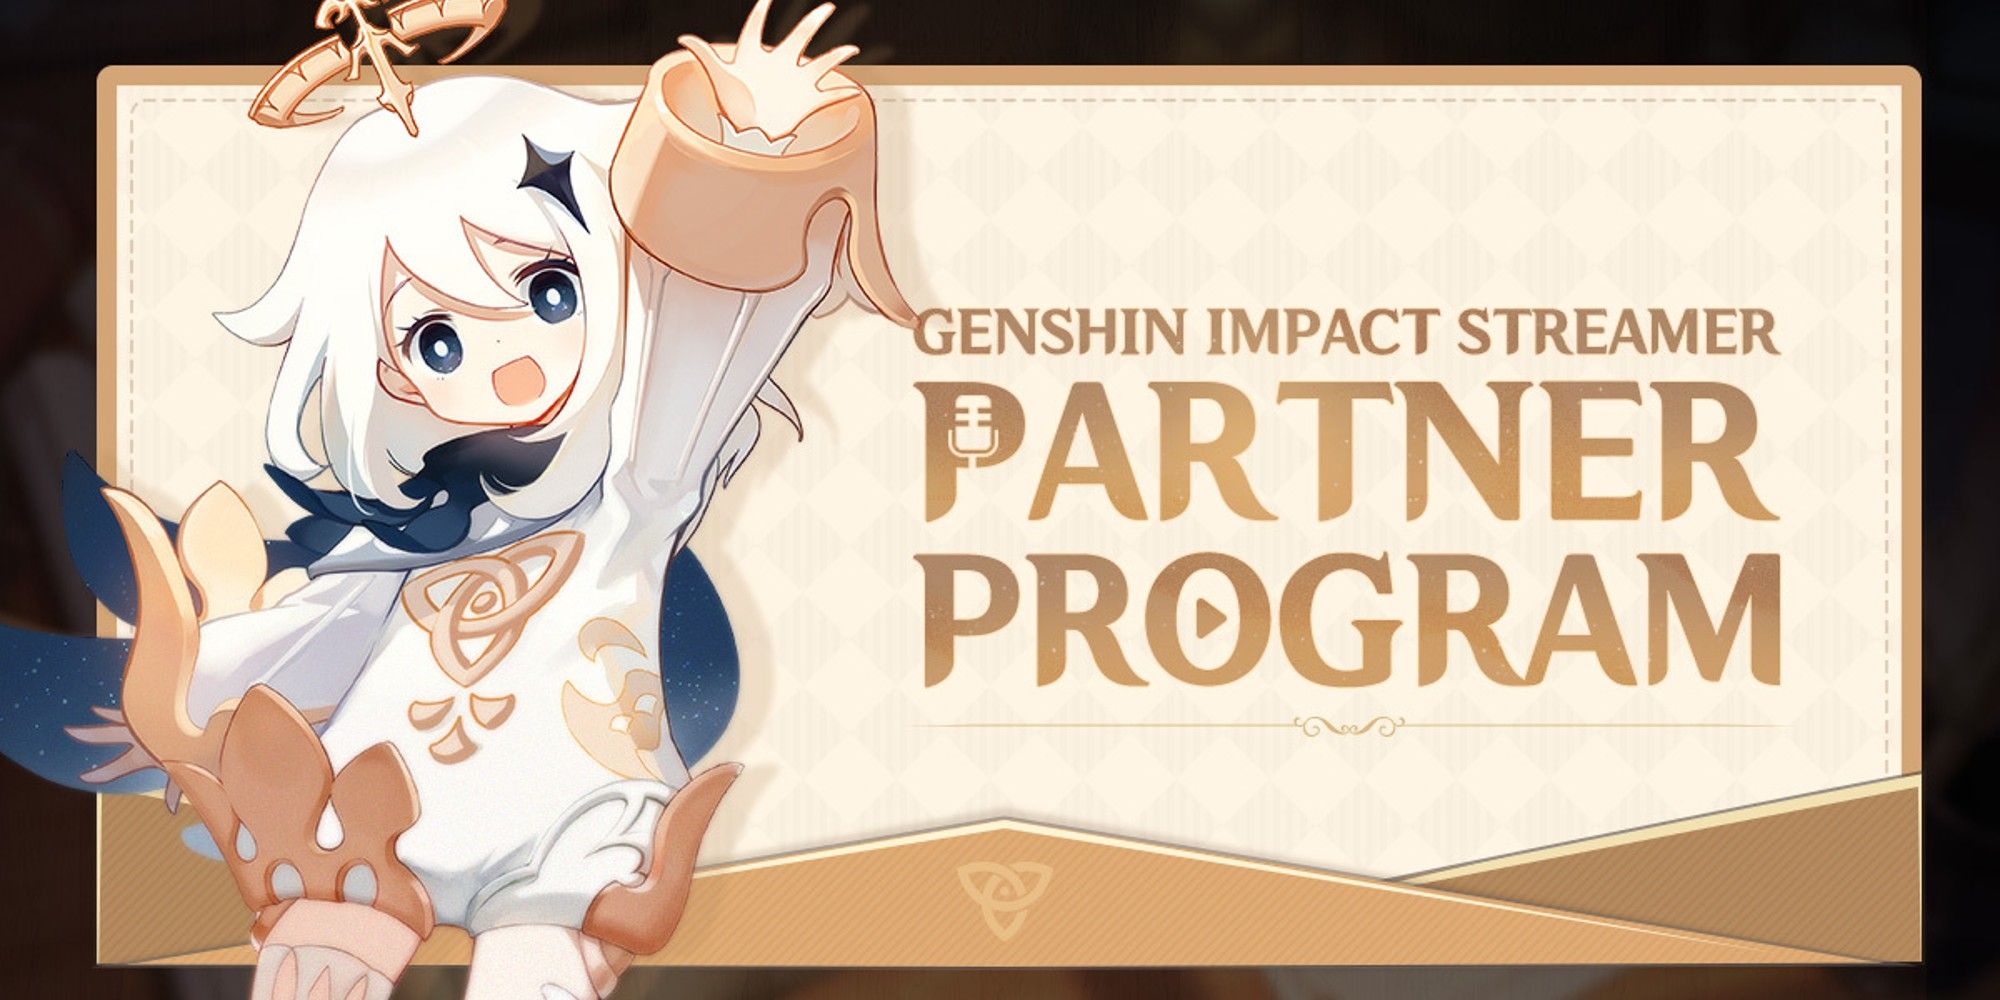 Genshin Impact Streamer Partner Program